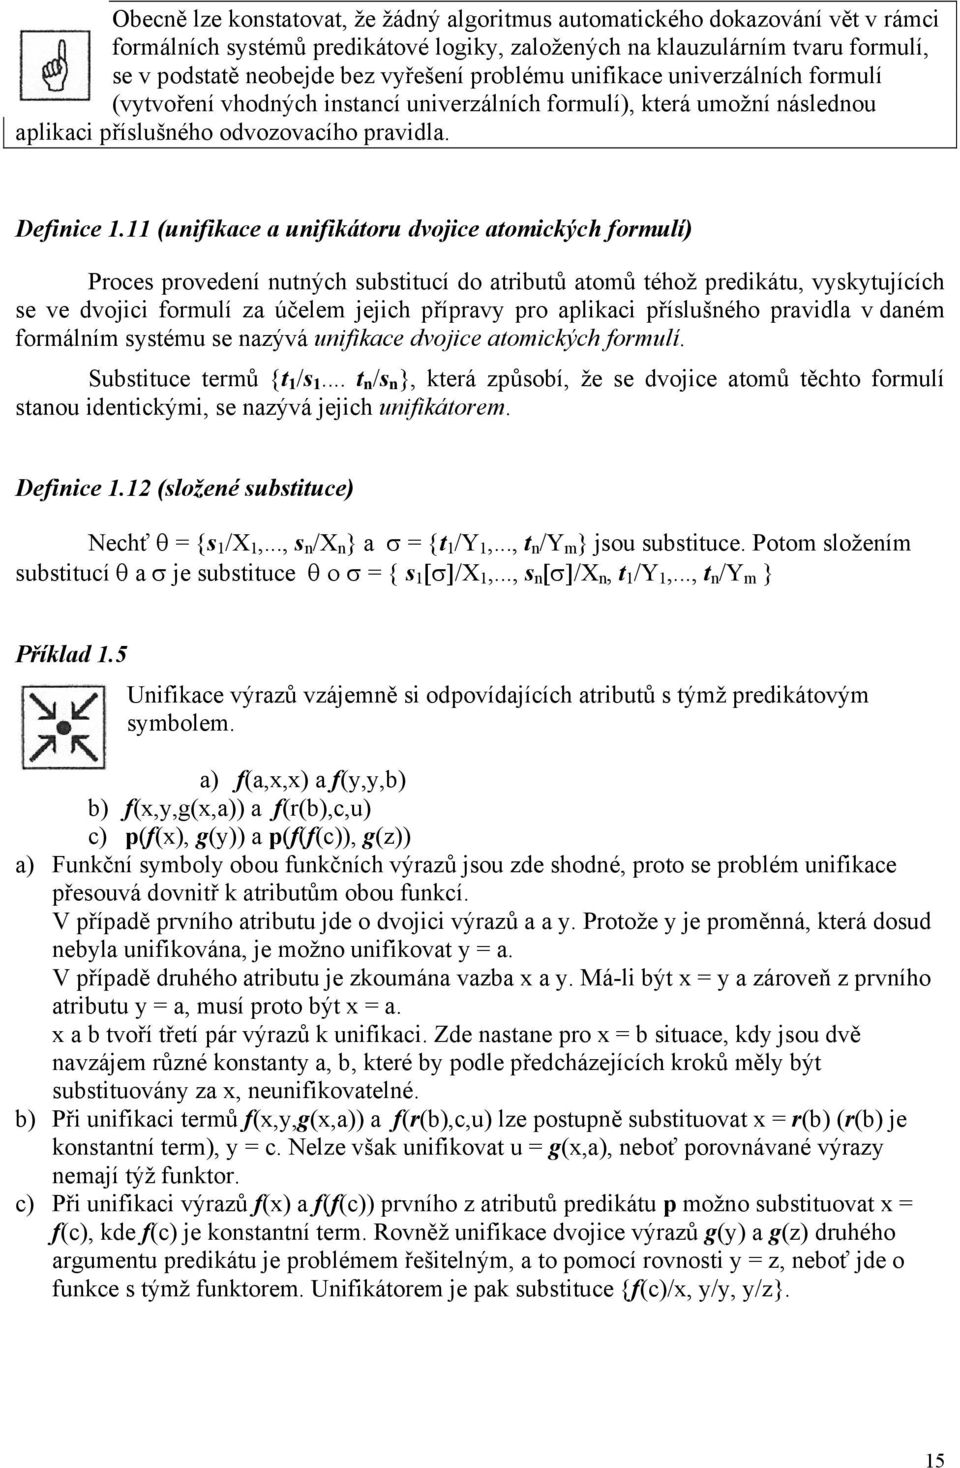 11 (unifikace a unifikátoru dvojice atomických formulí) Proces provedení nutných substitucí do atributů atomů téhož predikátu, vyskytujících se ve dvojici formulí za účelem jejich přípravy pro